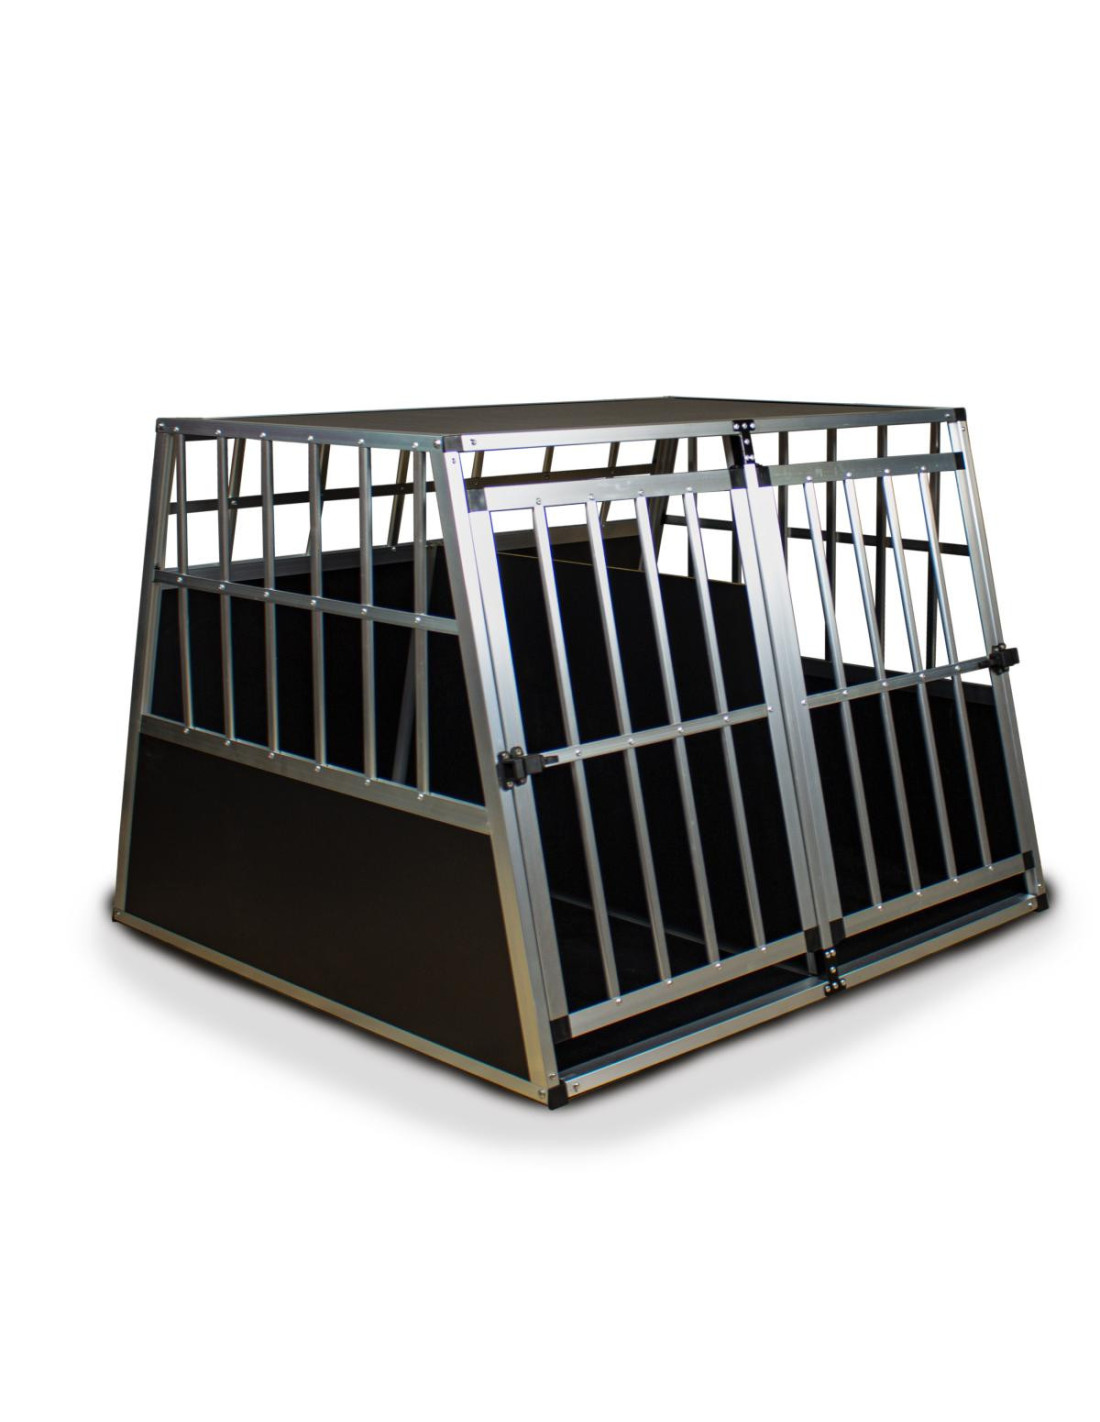 Cage transport chien - Cage chien voiture - Caisse de transport